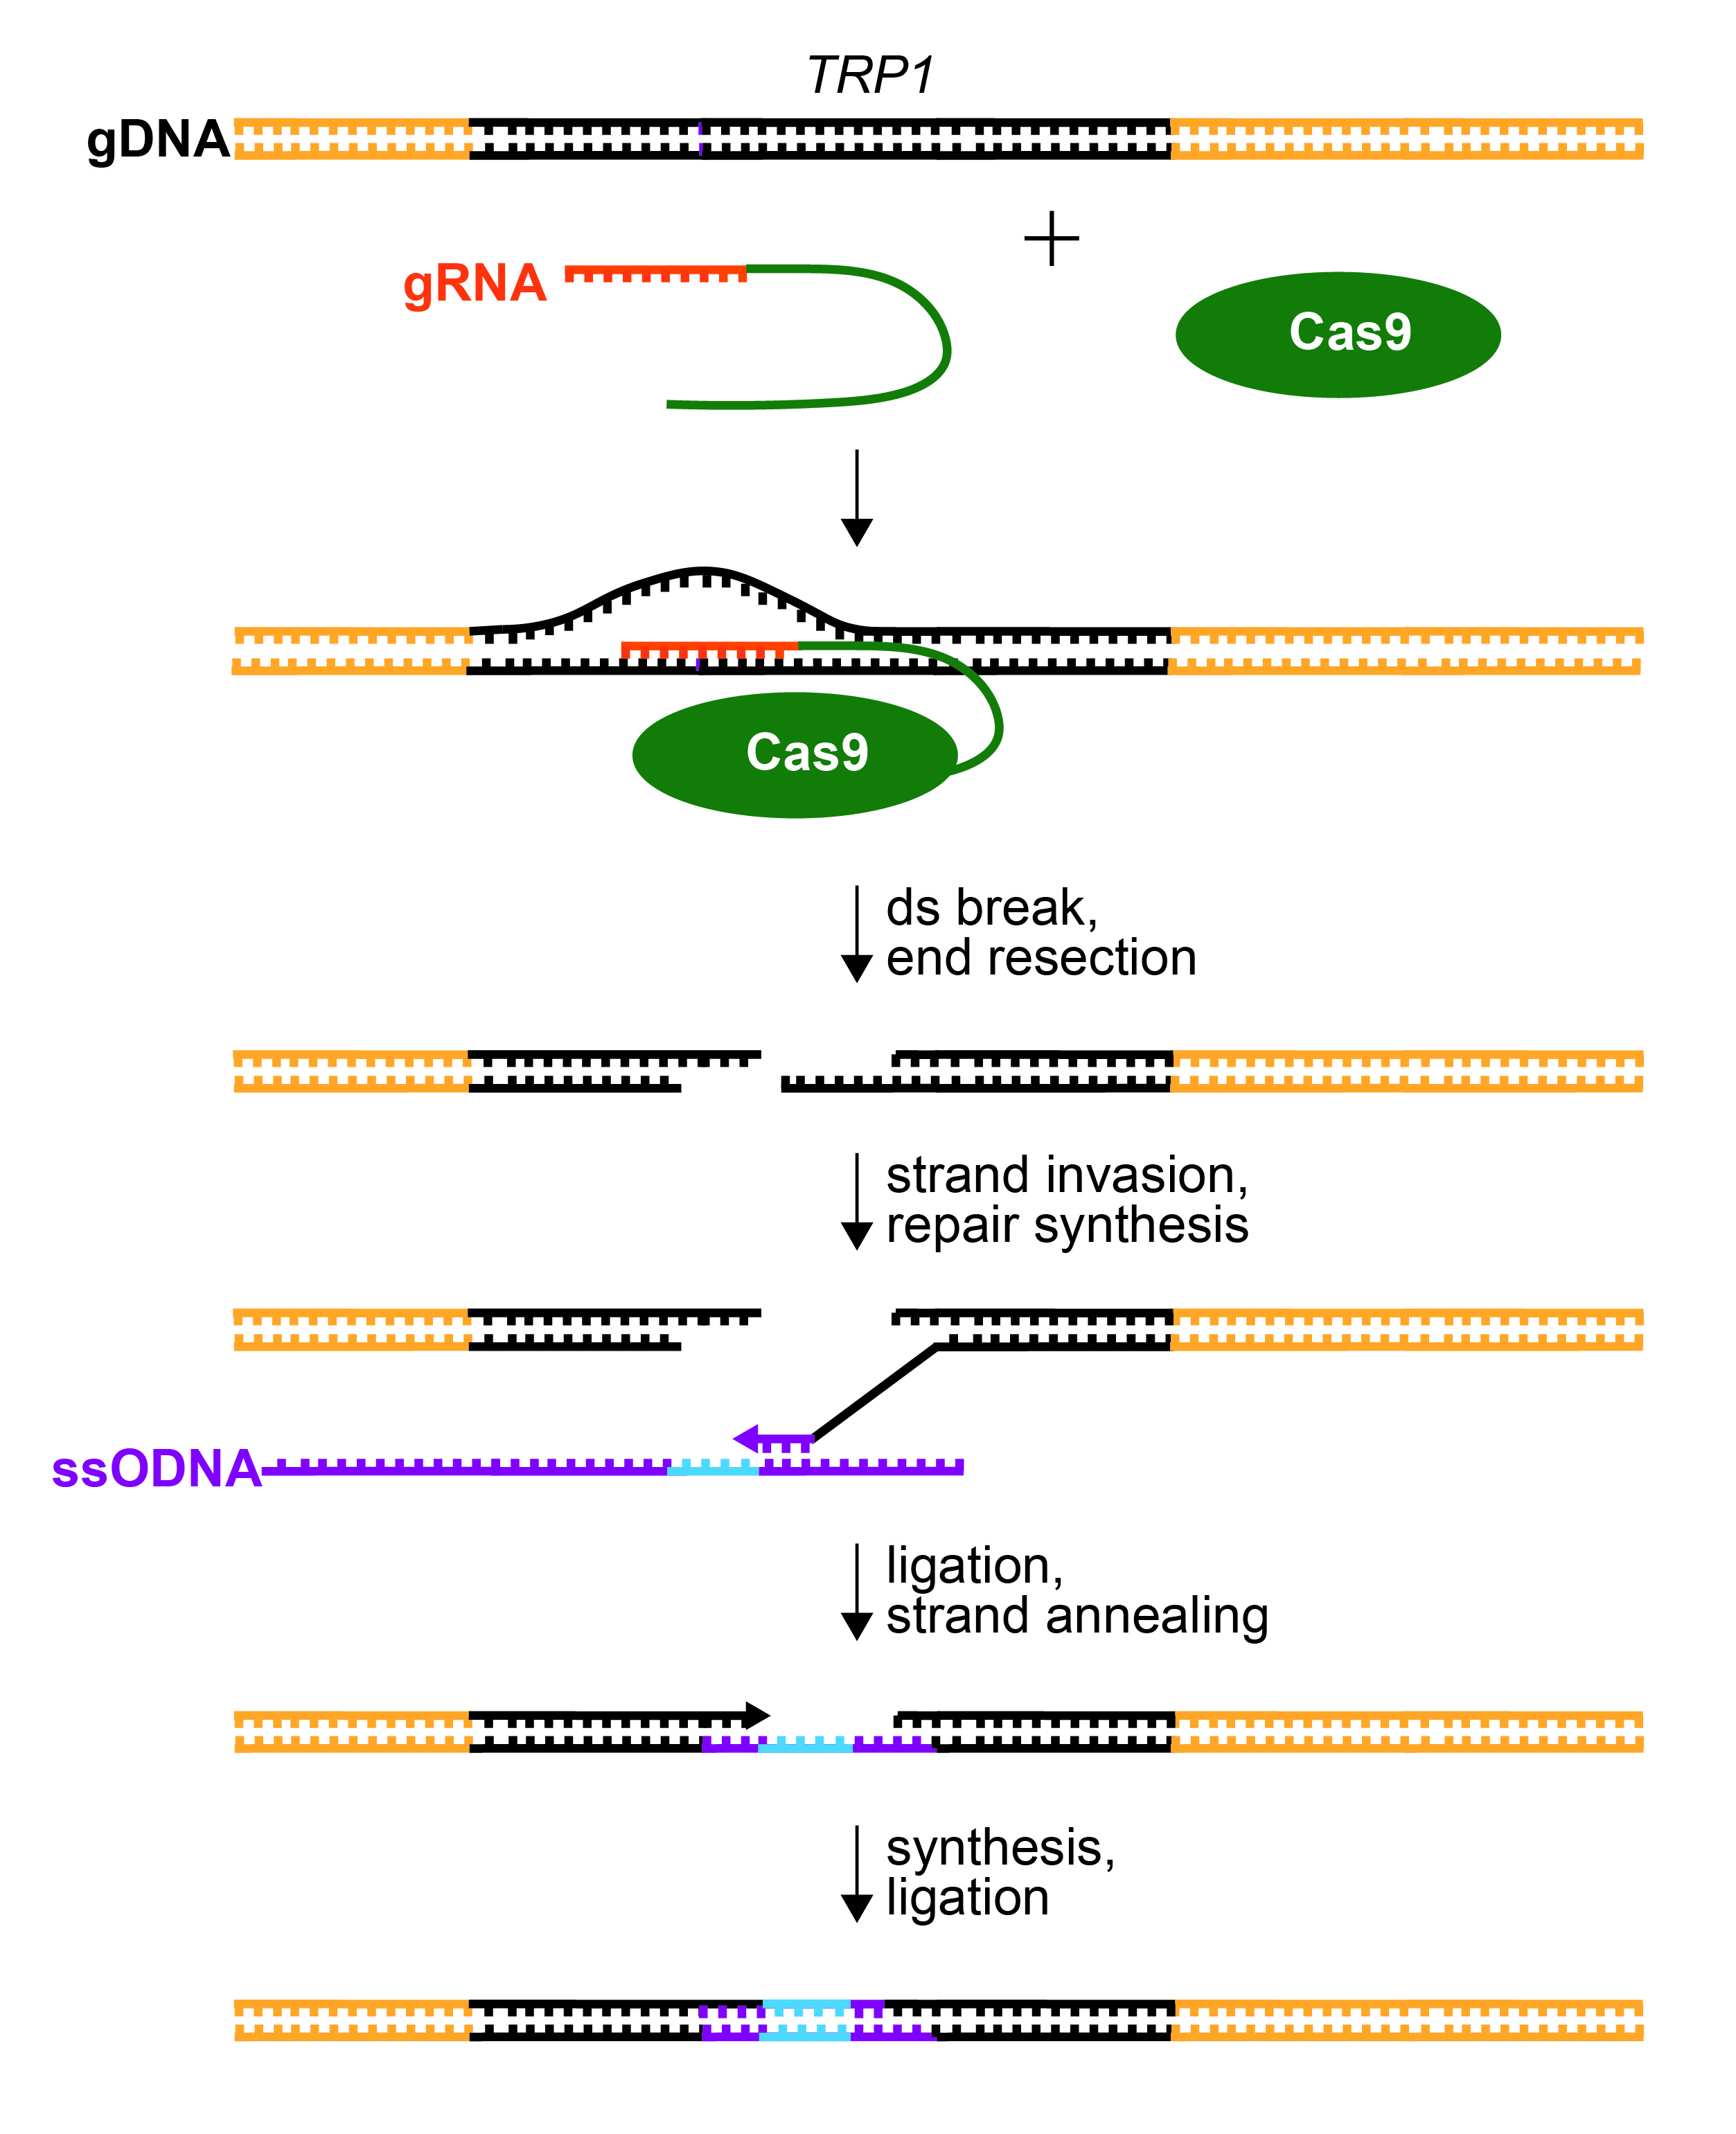 Figure 2. Repair of CRISPR/Cas9-Mediated dsDNA Break.